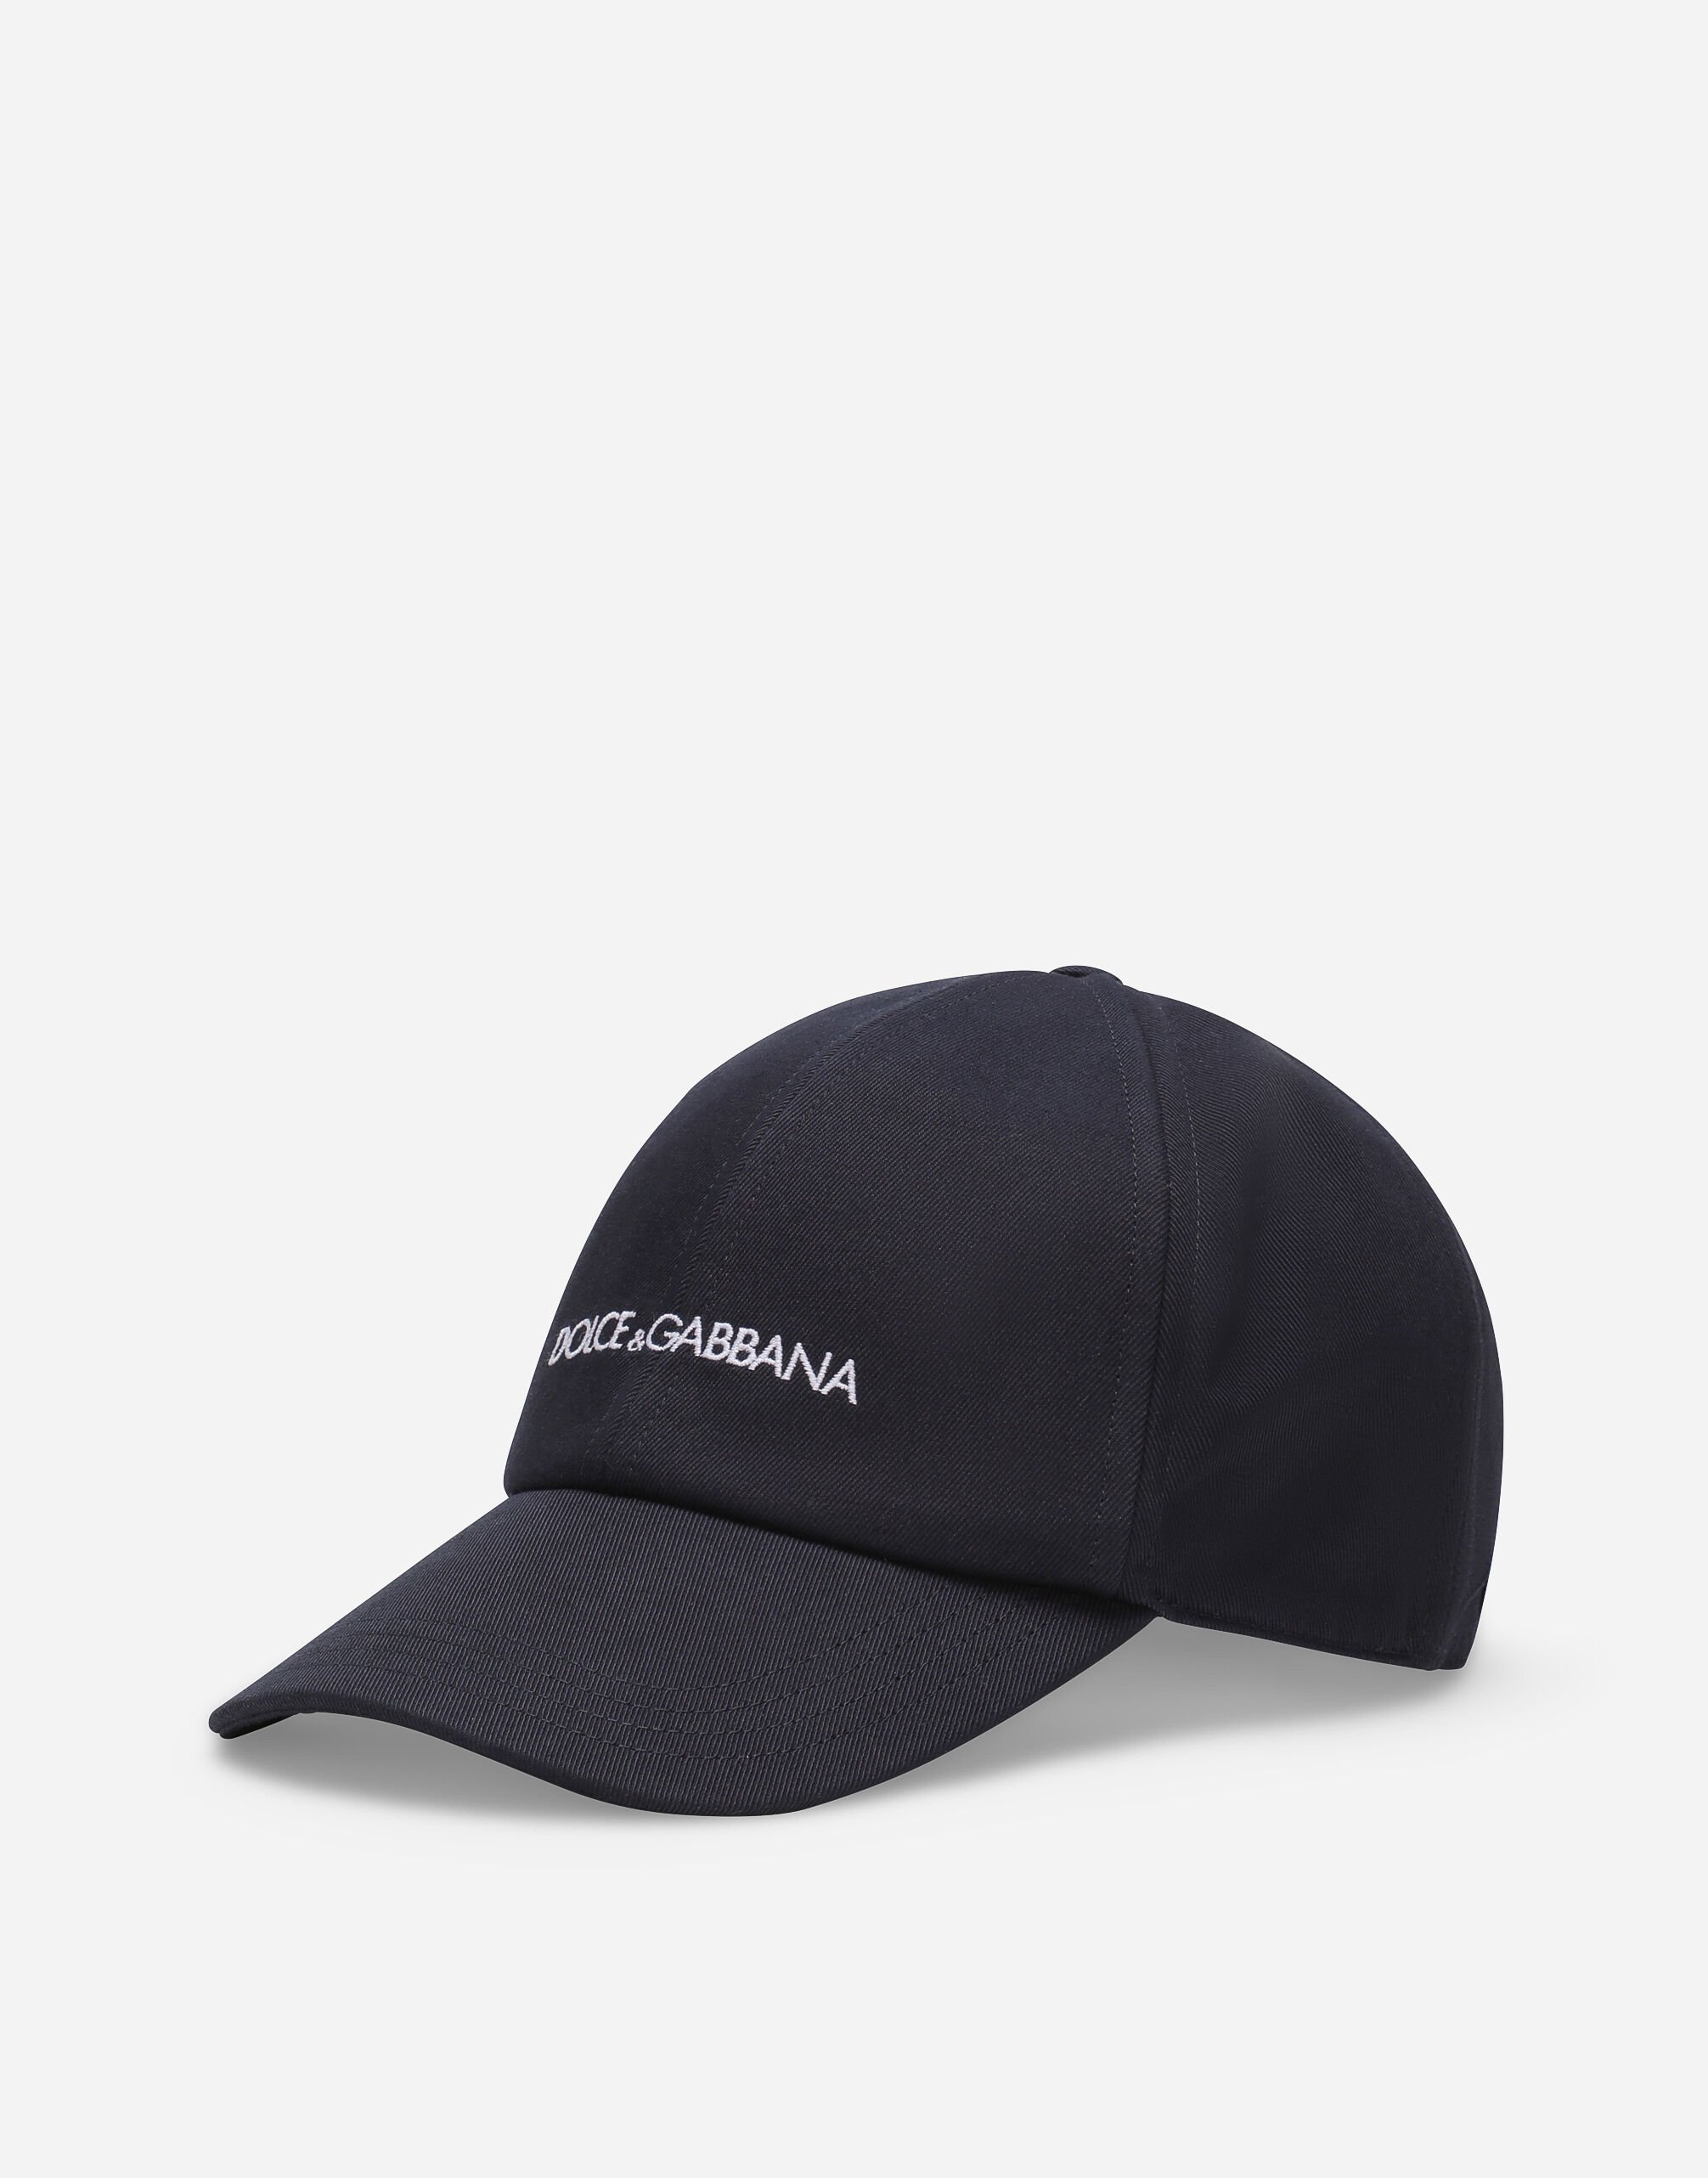 Dolce & Gabbana Cotton baseball cap with Dolce&Gabbana logo Red havana VG4452VP869